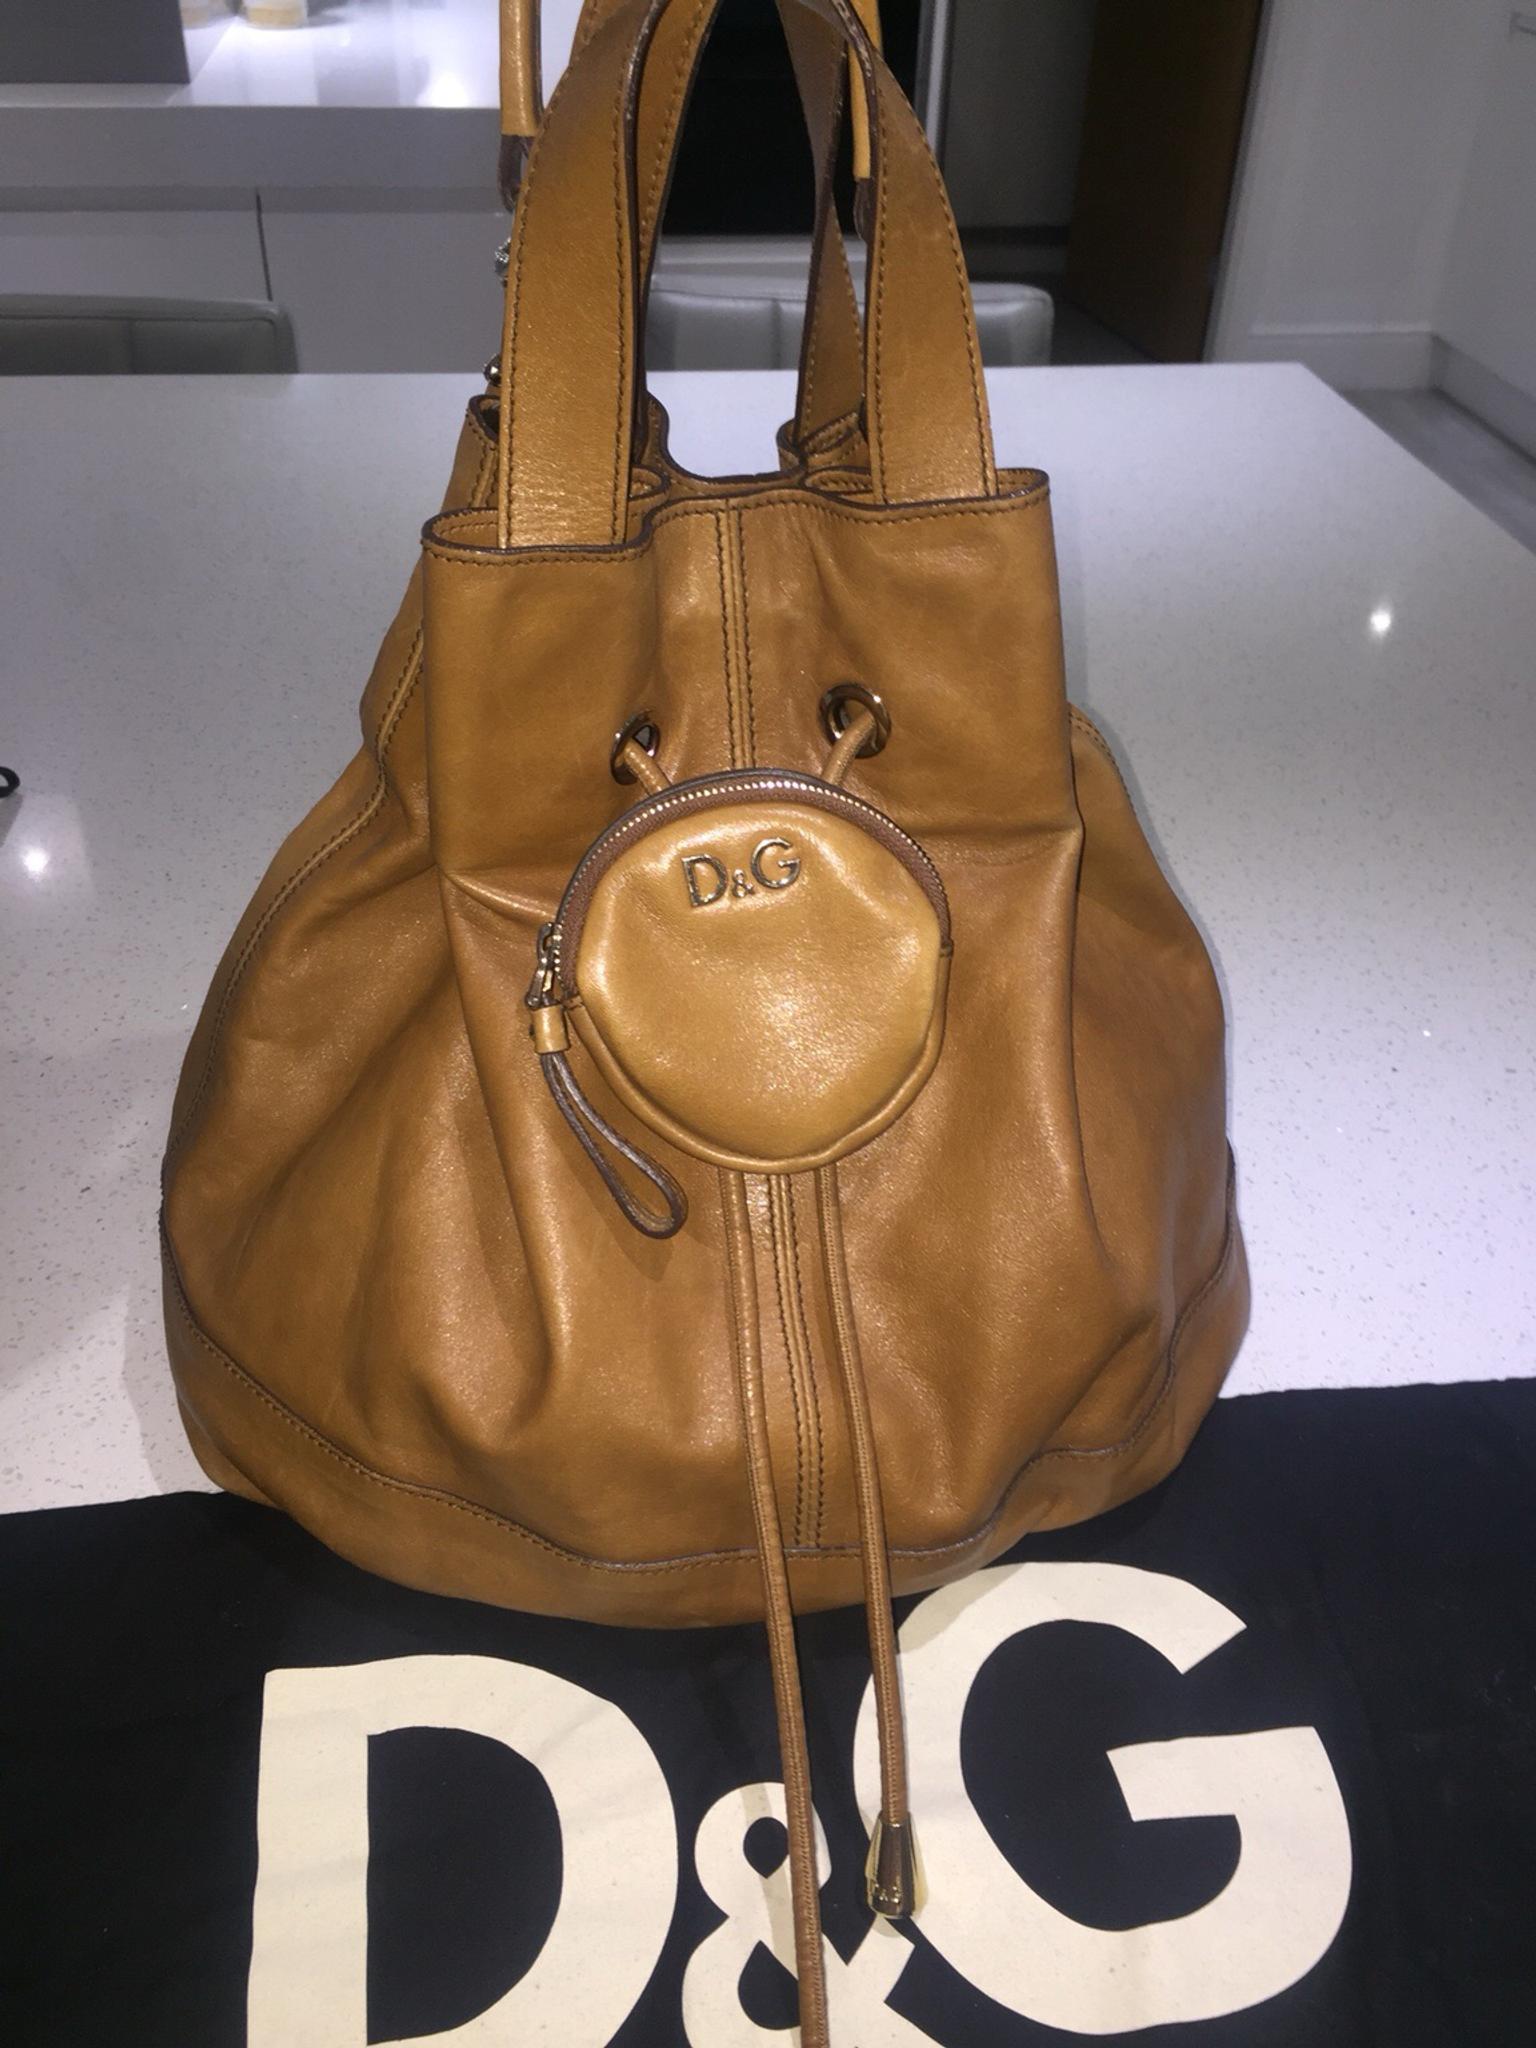 d and g bag real or fake